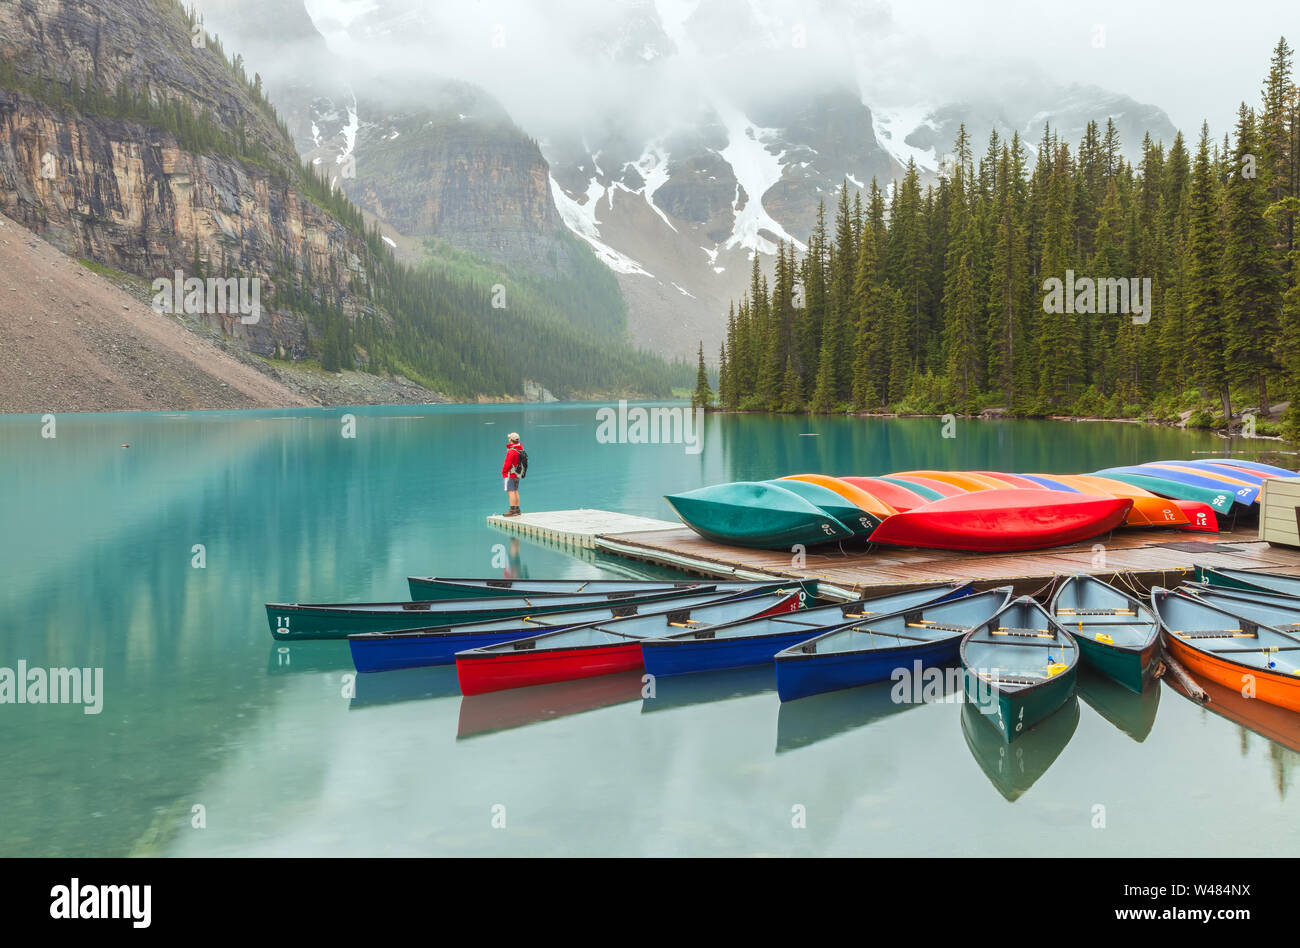 Les canots et colorés un visiteur au lac Moraine, parc national Banff, Canada, sur un matin de pluie Banque D'Images